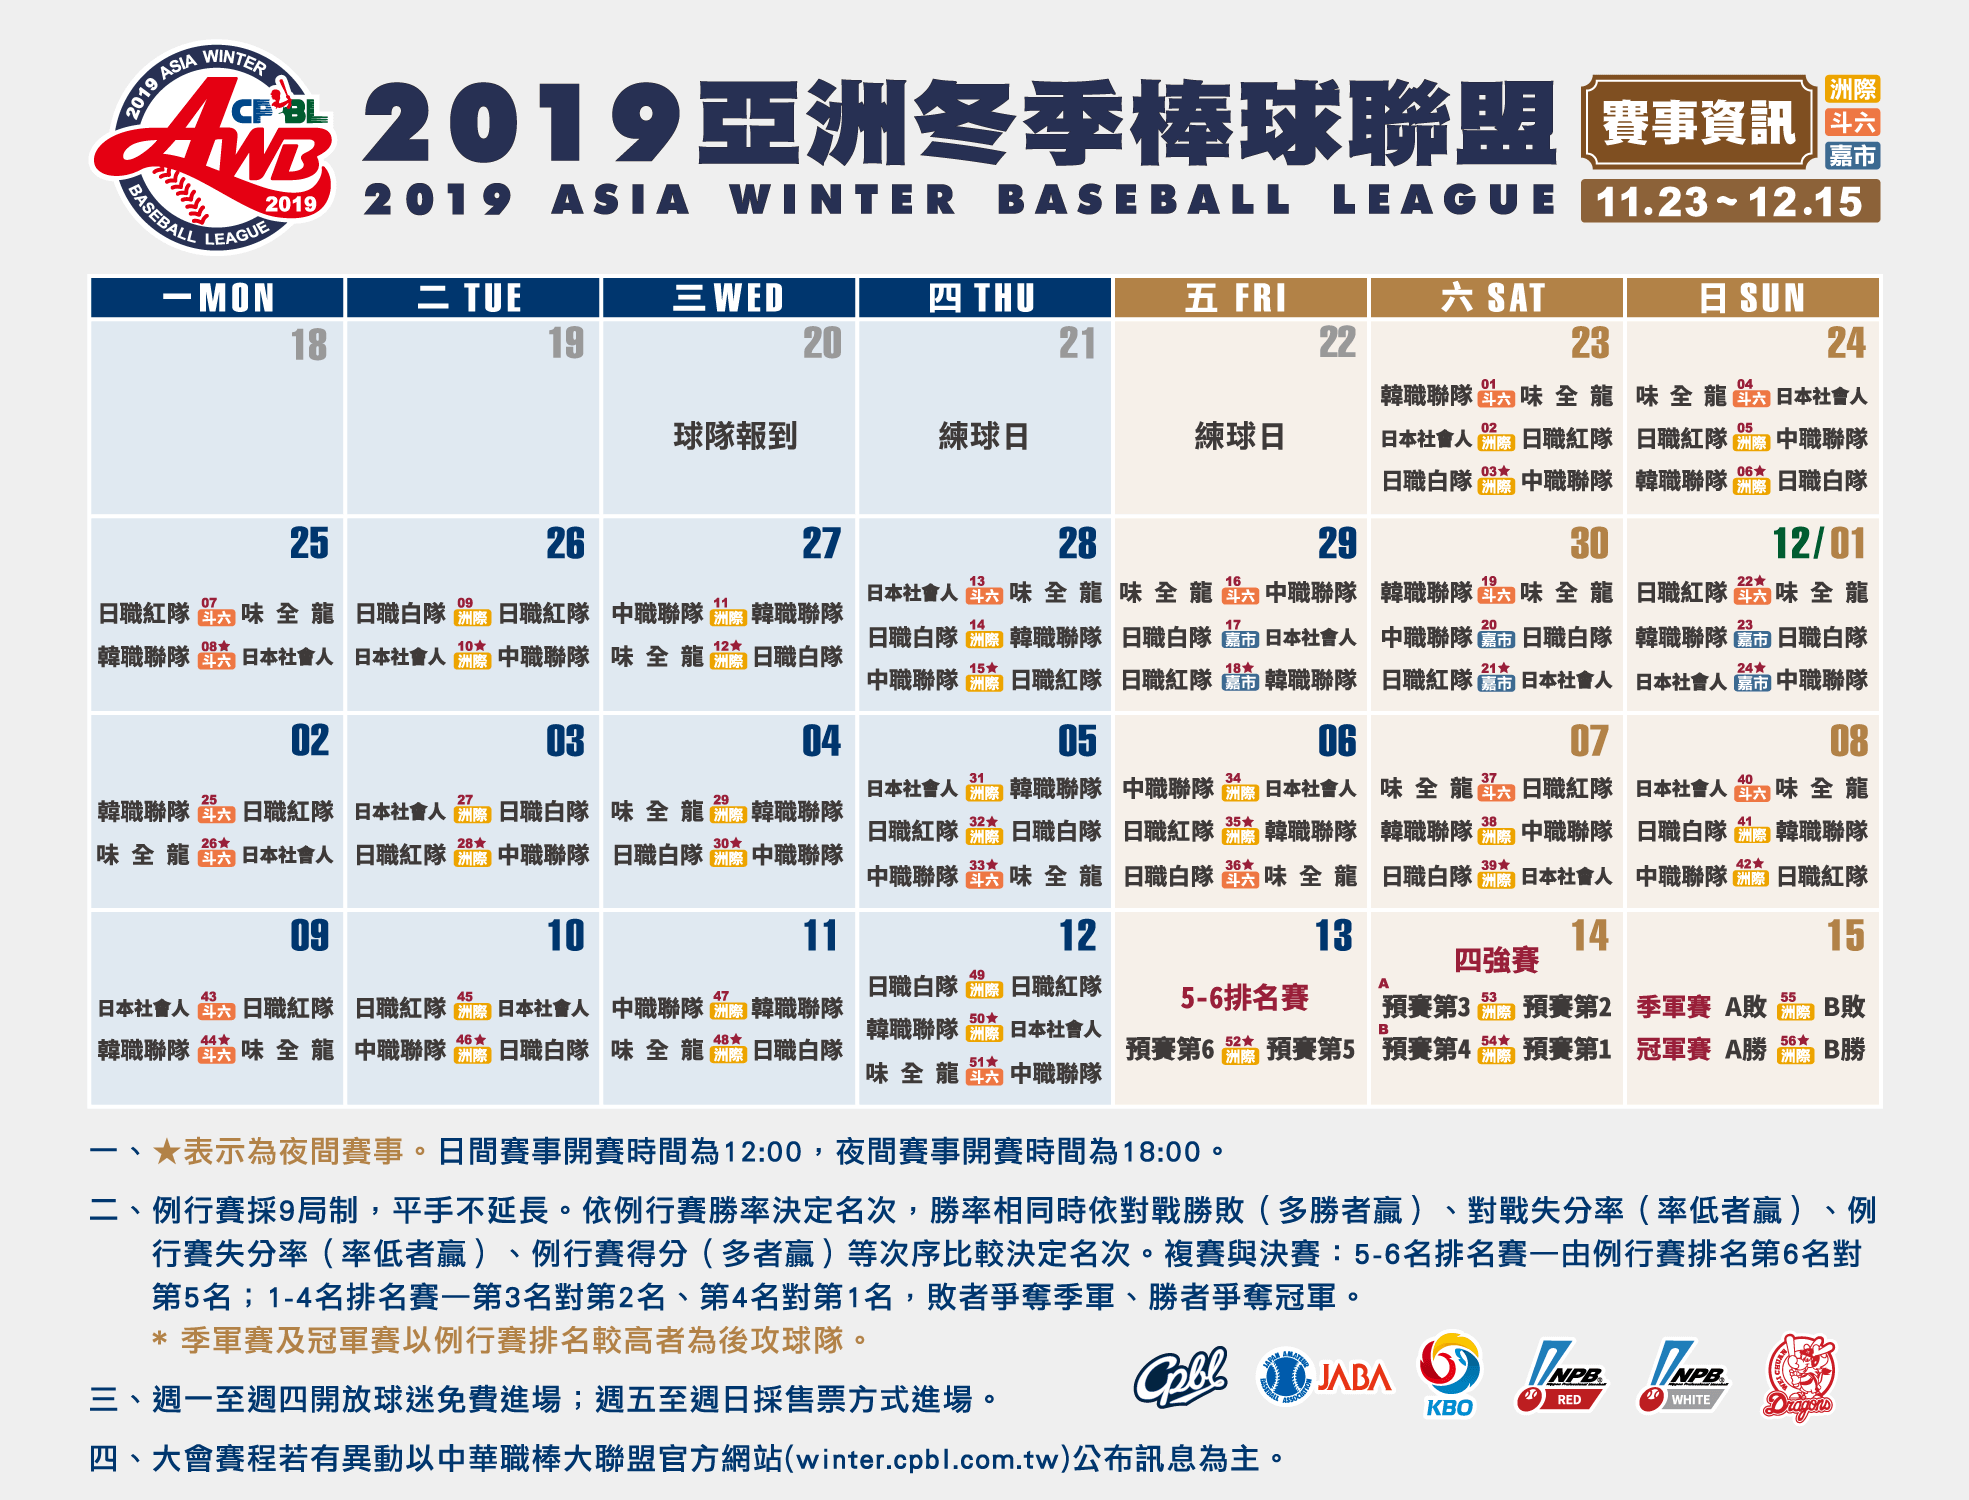 siriusxm world series mlb schedule 2019